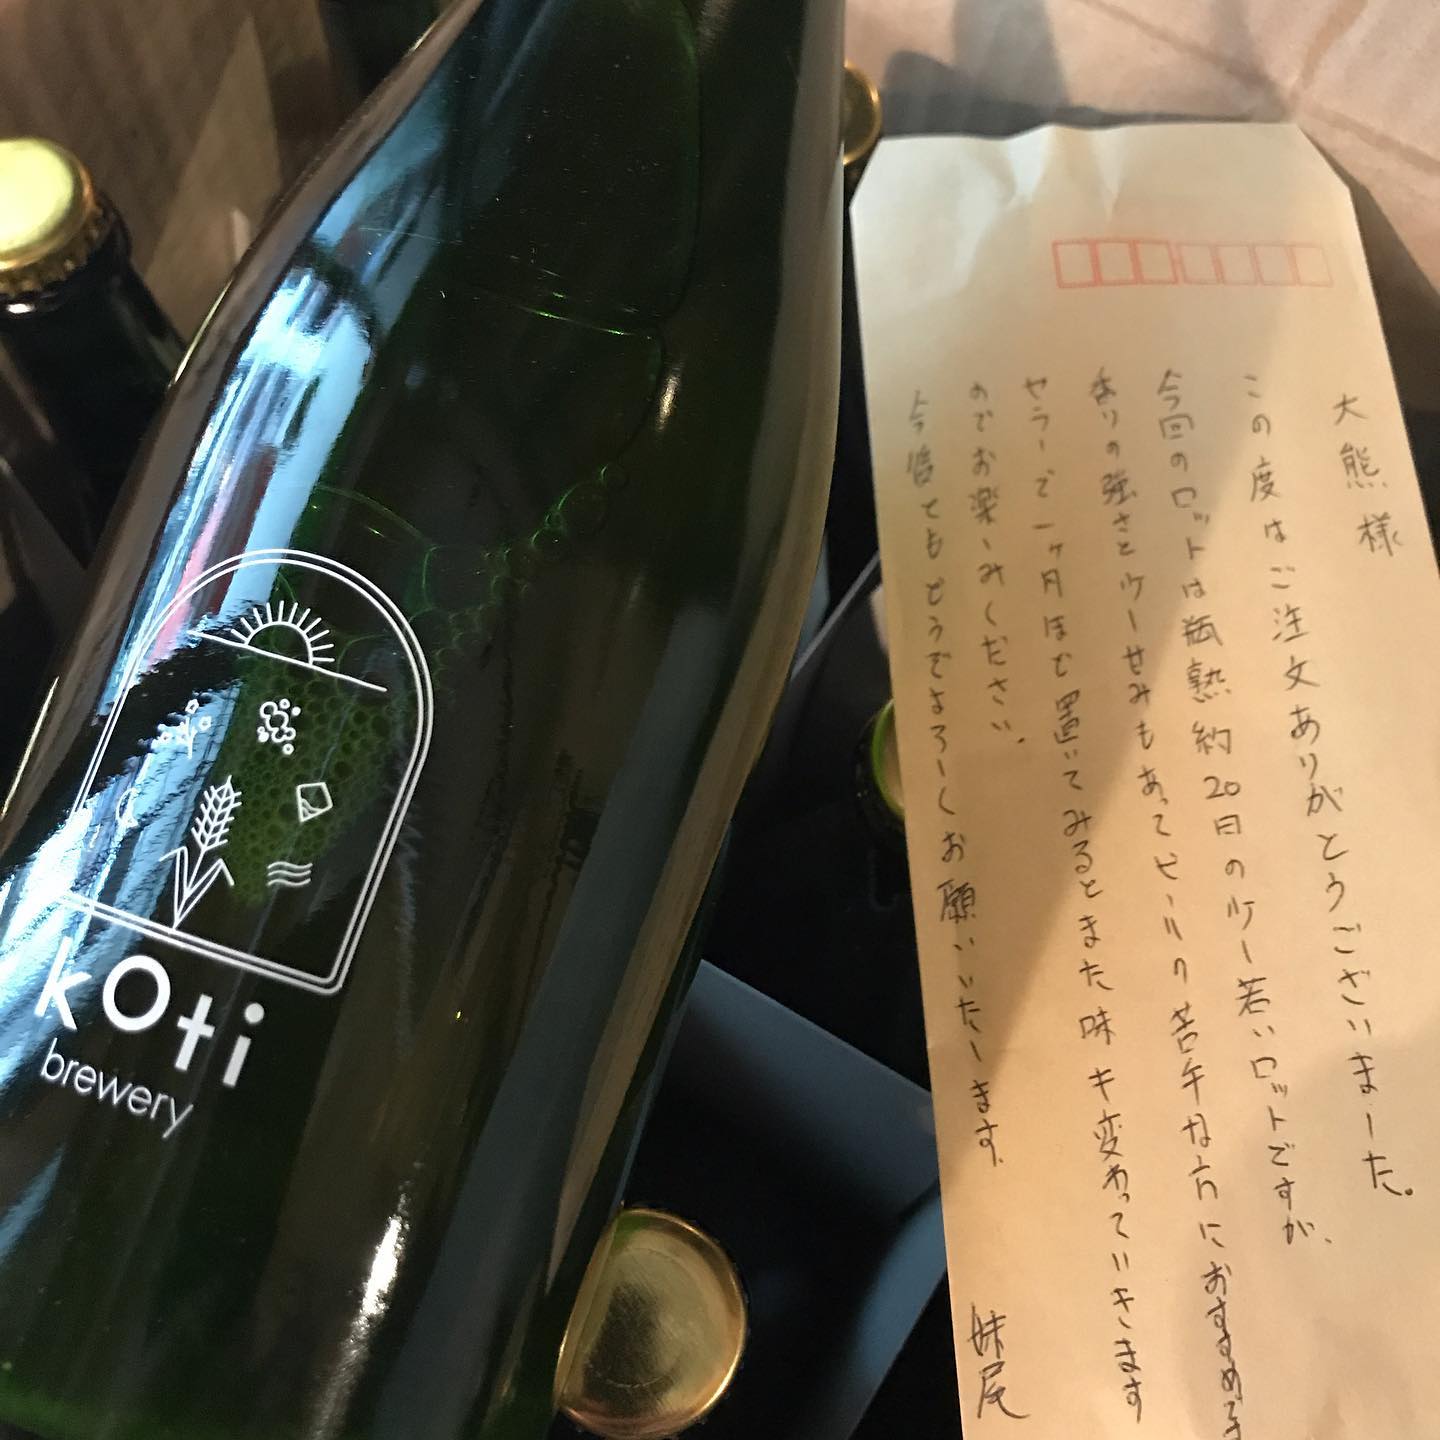 心待ちにしてたビールが届きました！Koti brewery(コチブルワリー)さん@岡山のホワイトエール以前から知ってはいたのですが、先日大牟田のnidoでいただいてから俄然ファンになりました。お一人で全ての作業をされてるので、当然たくさんは作れません。貴重なボトルを少し分けていただきました。ありがとうございます。今日12/20からグラスでお出ししますね。詳しくはこちらをご覧くださいhttps://jr-furusato.jp/magazine/1869/#イルフェソワフ #ワイン#日本酒 #薬院#警固#kotibrewery #クラフトビール